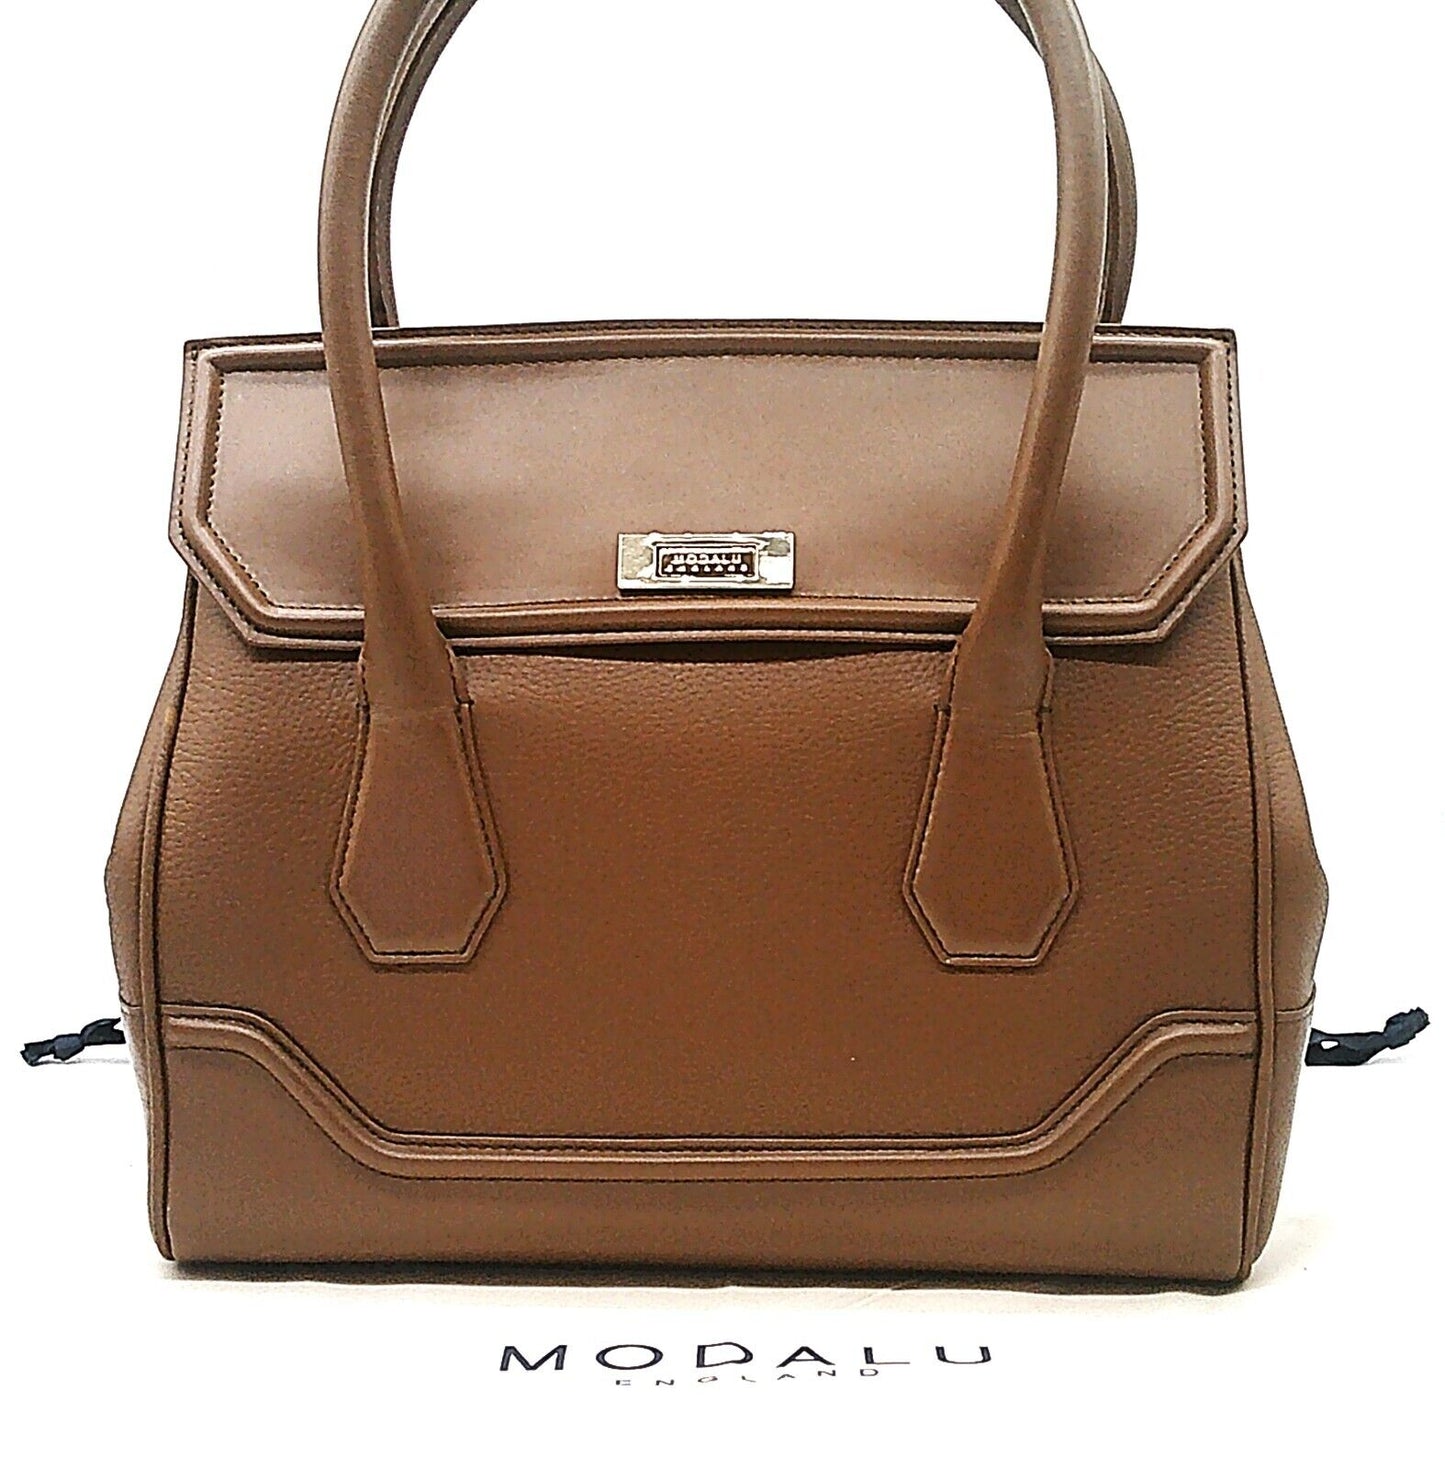 Leather Modalu Hemingway Tan Tote Bag RRP £199